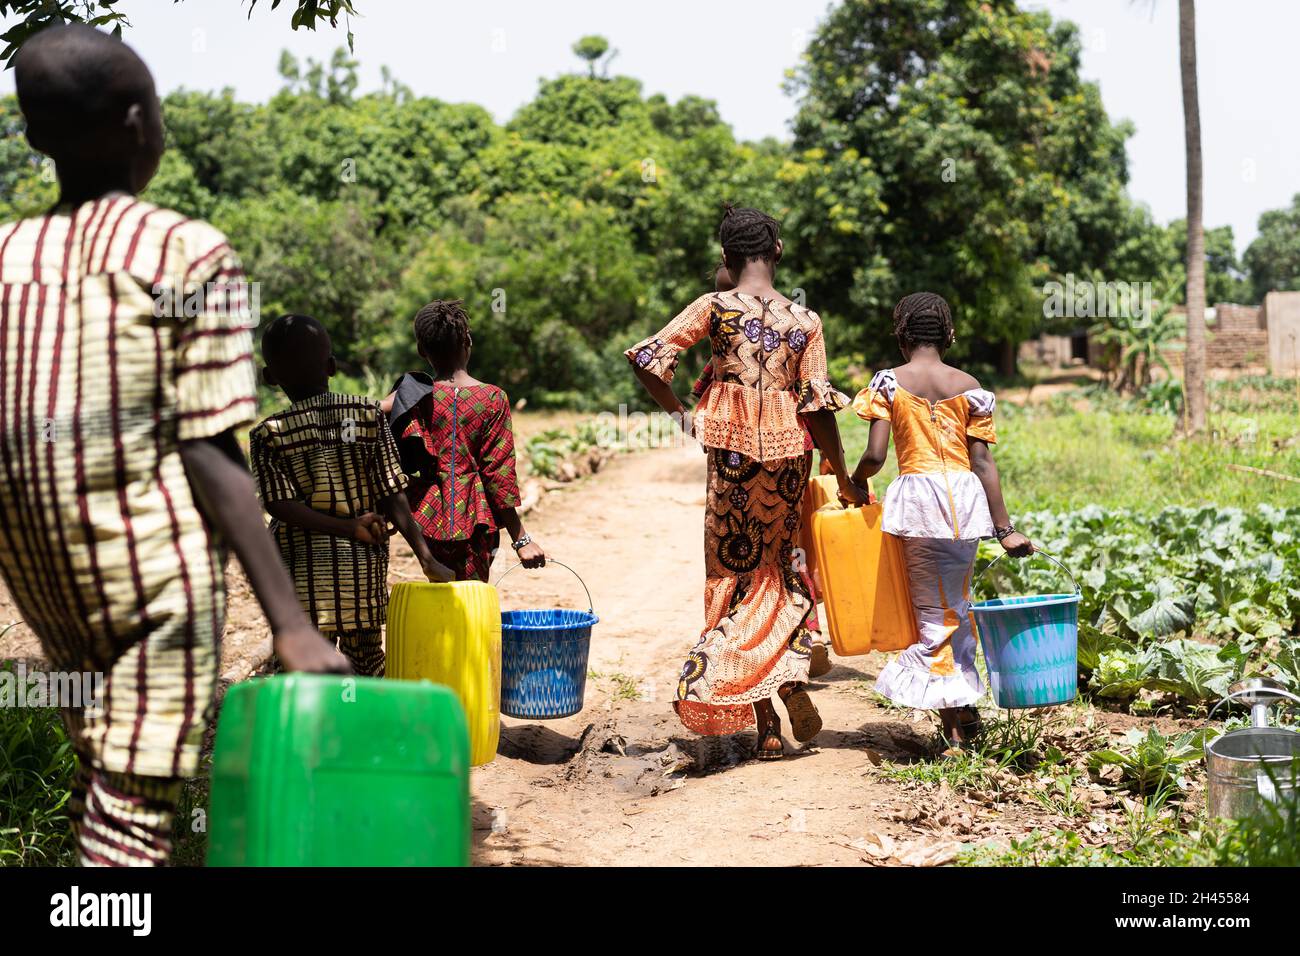 Gruppo di ragazzi e ragazze neri che trasportano serbatoi d'acqua da qualche parte in un'area rurale agricola africana Foto Stock